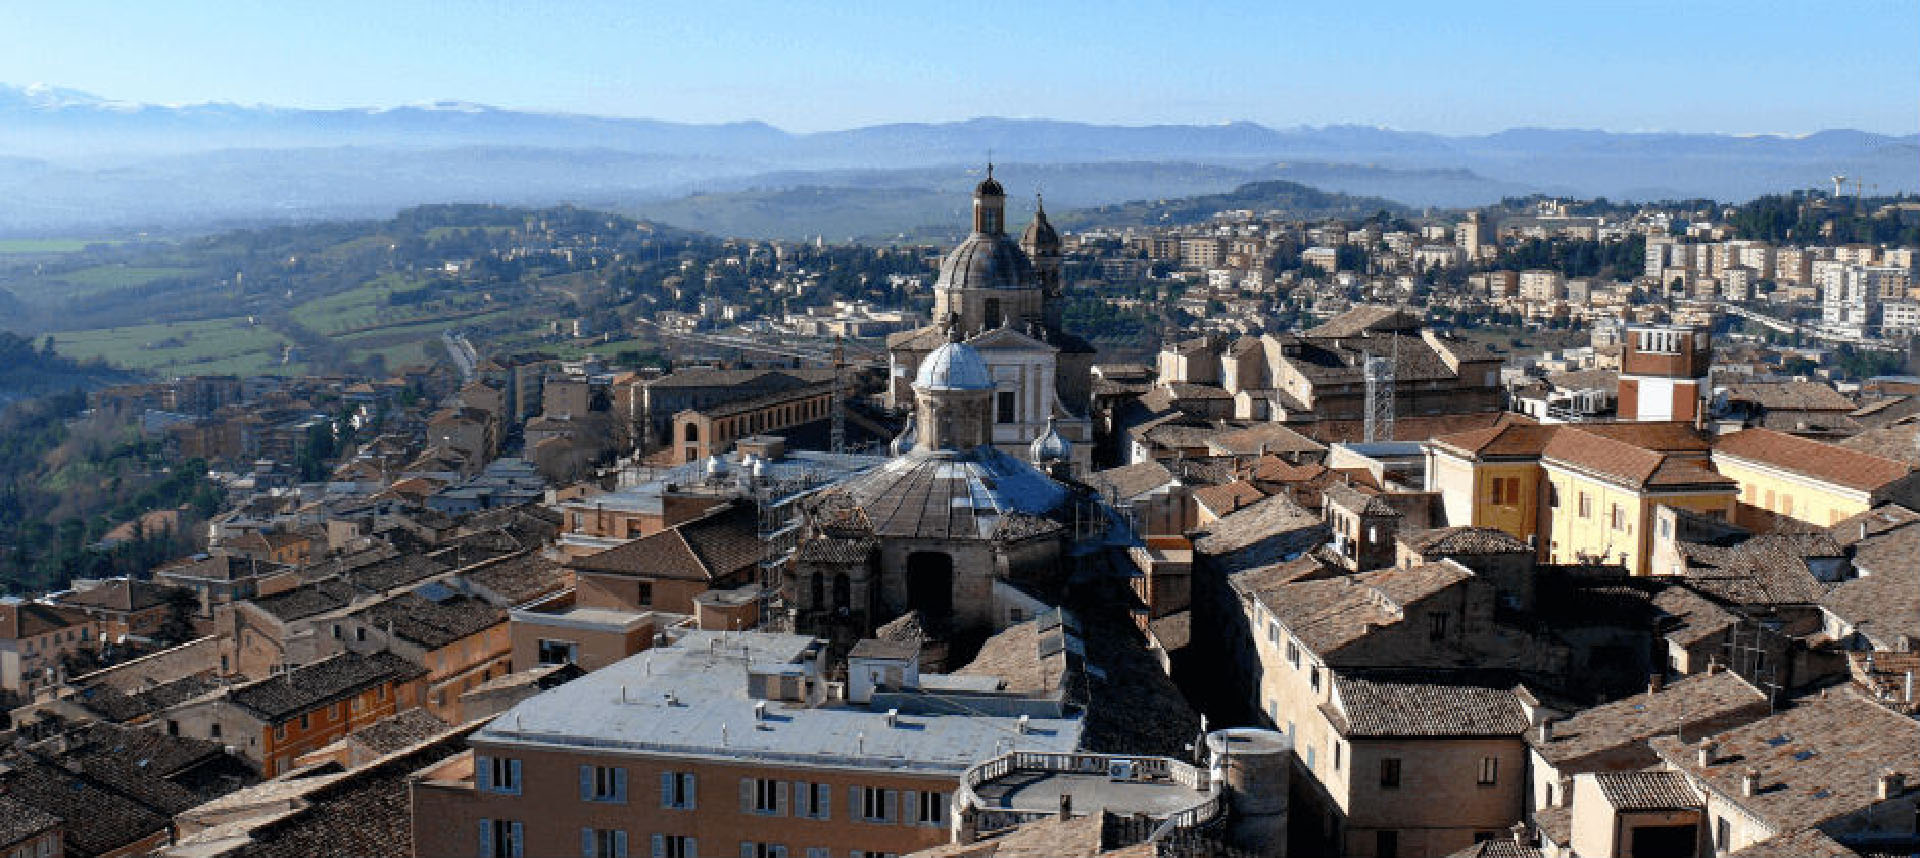 L'université de Macerata, située en Italie dans la province des Marches, est l'une des plus anciennes d'Europe | © Educations.com